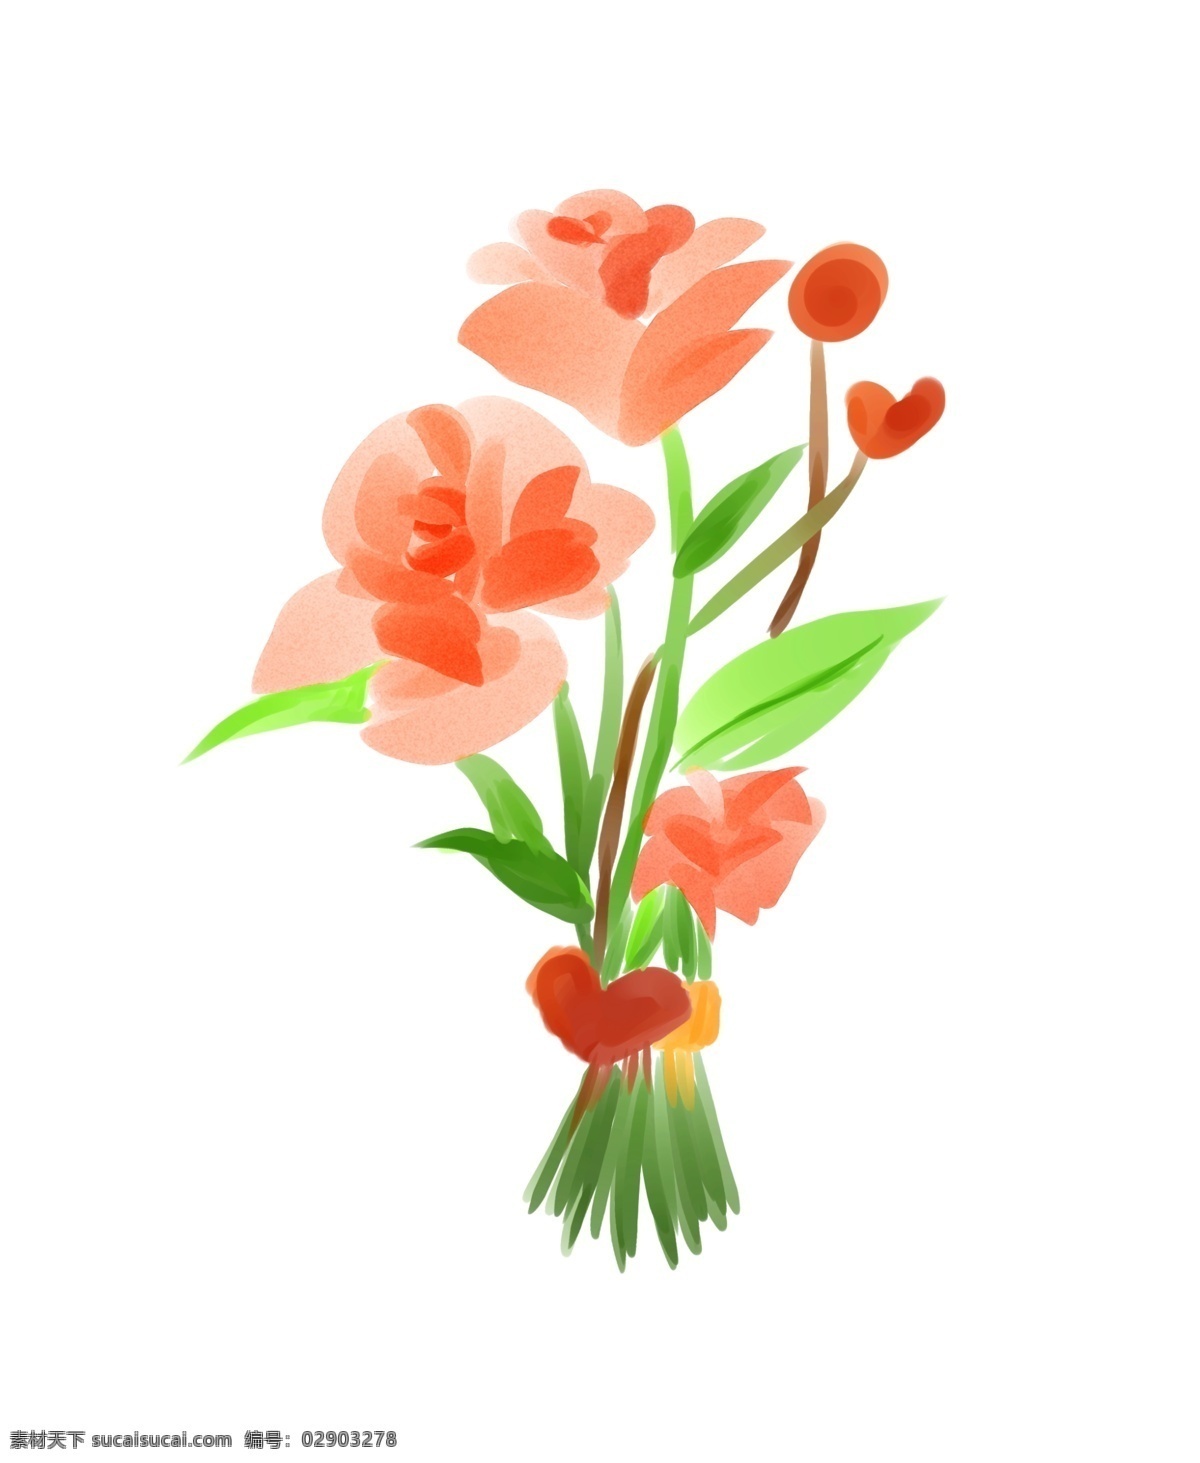 情人节 水彩 花束 插画 水彩花束 手绘花束 漂亮的花束 一束鲜花 情人节礼物 花朵 绿色的叶子